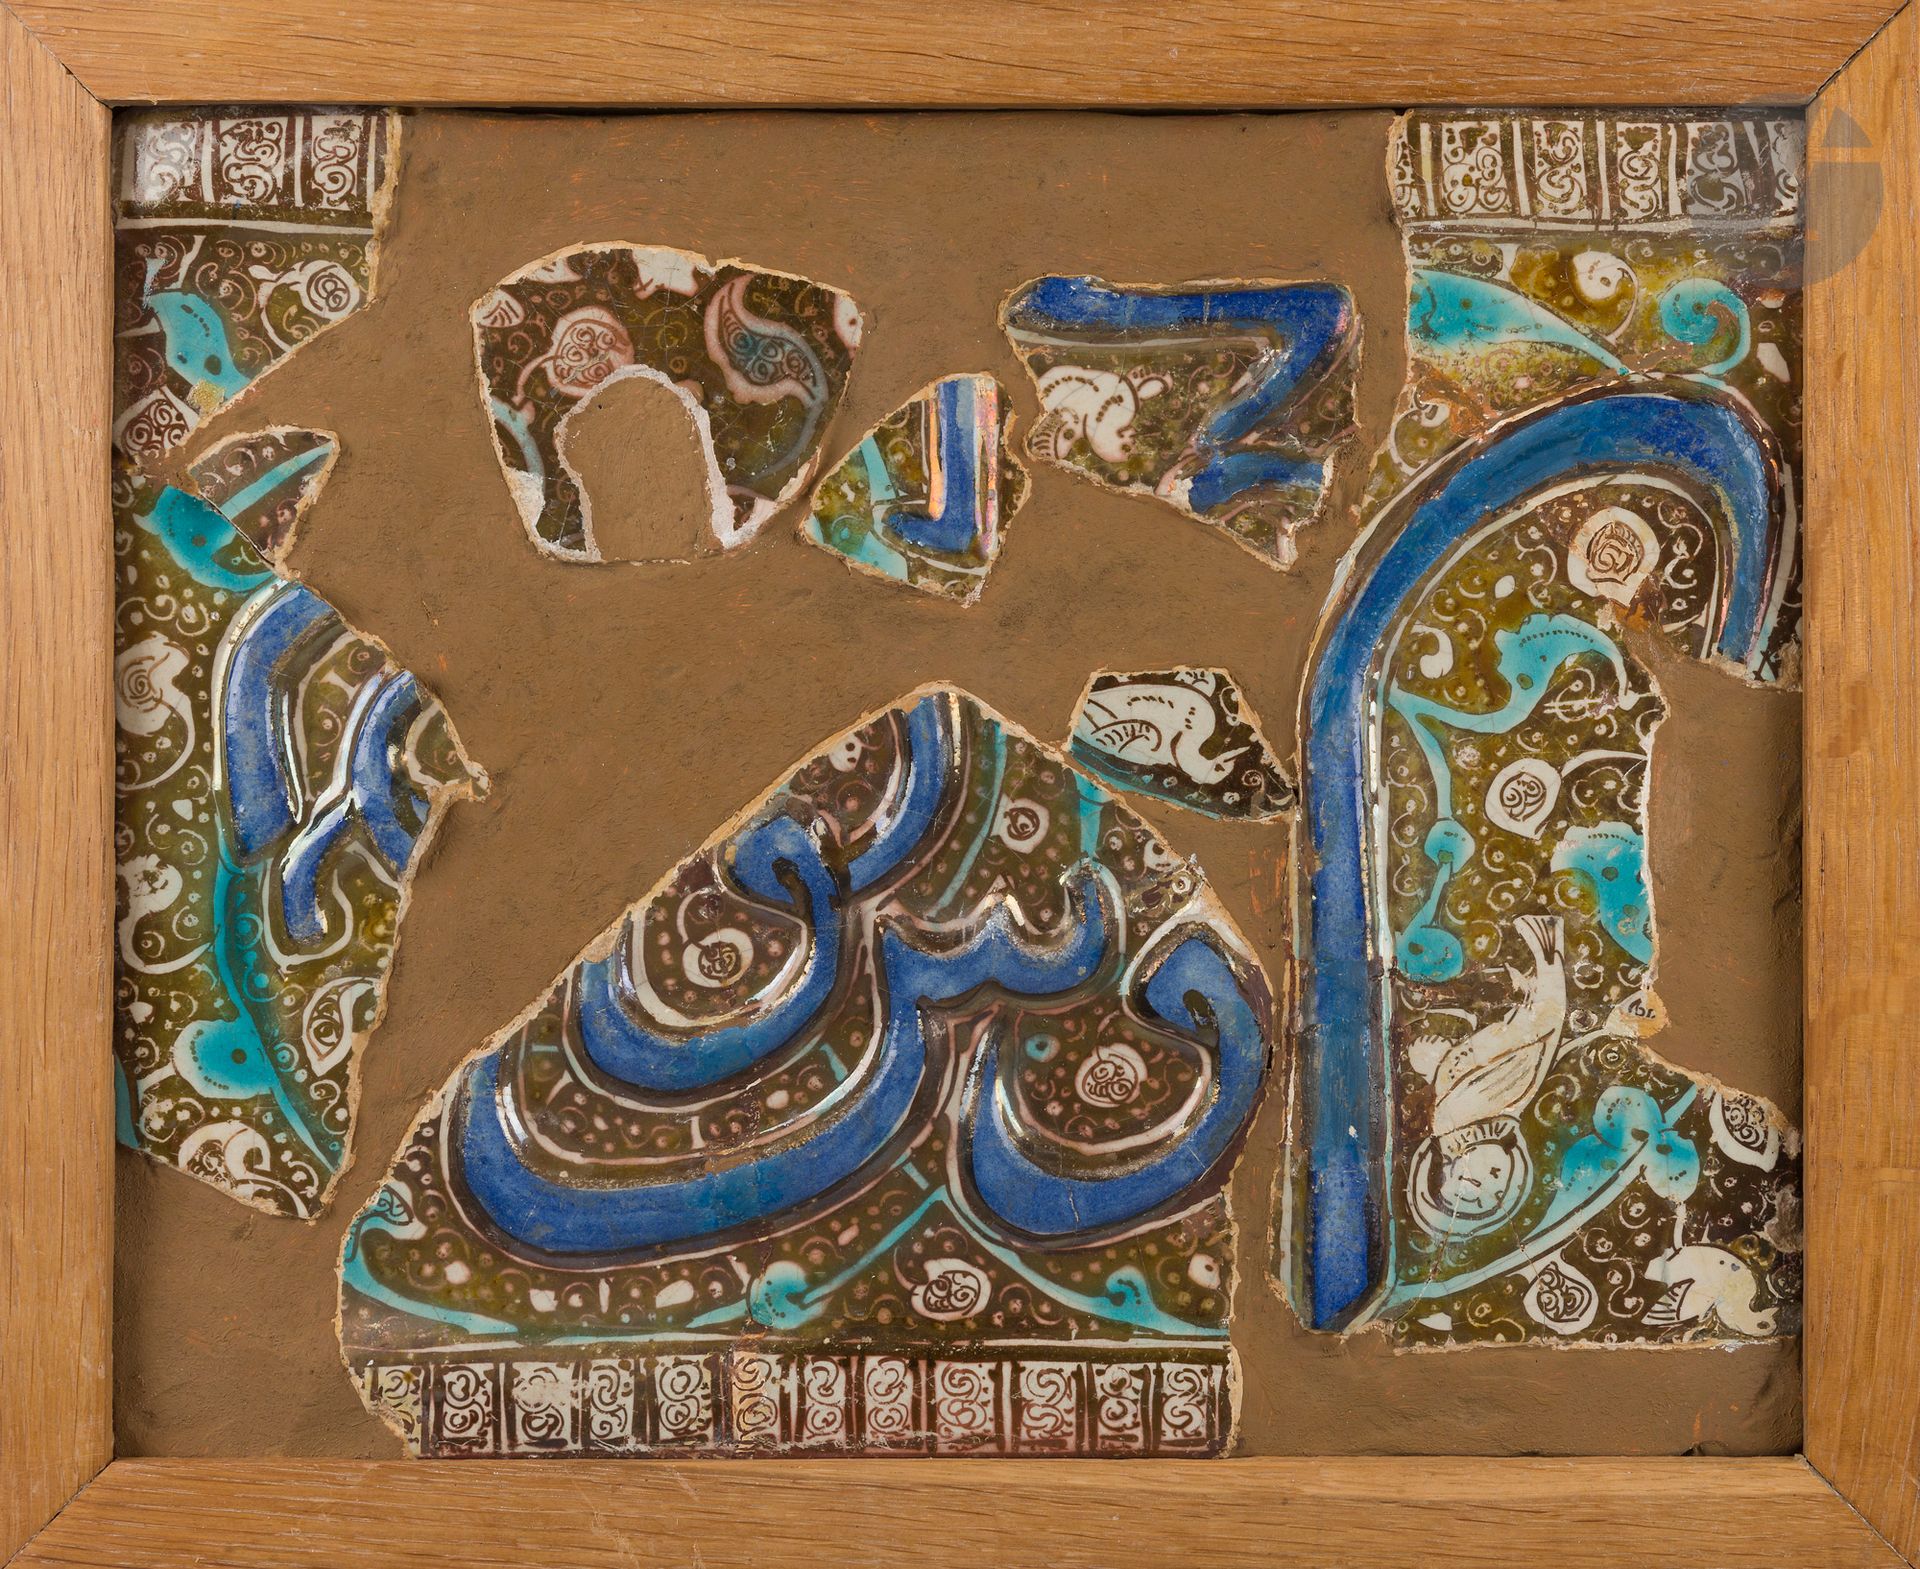 Null 九块带有金属光泽装饰的瓷砖碎片，伊朗伊尔汗王朝，13世纪末至14世纪初
带有模制书信装饰的瓷砖碎片，用钴强化，以金属光泽装饰的叶子中的鸟为背景
。
其&hellip;